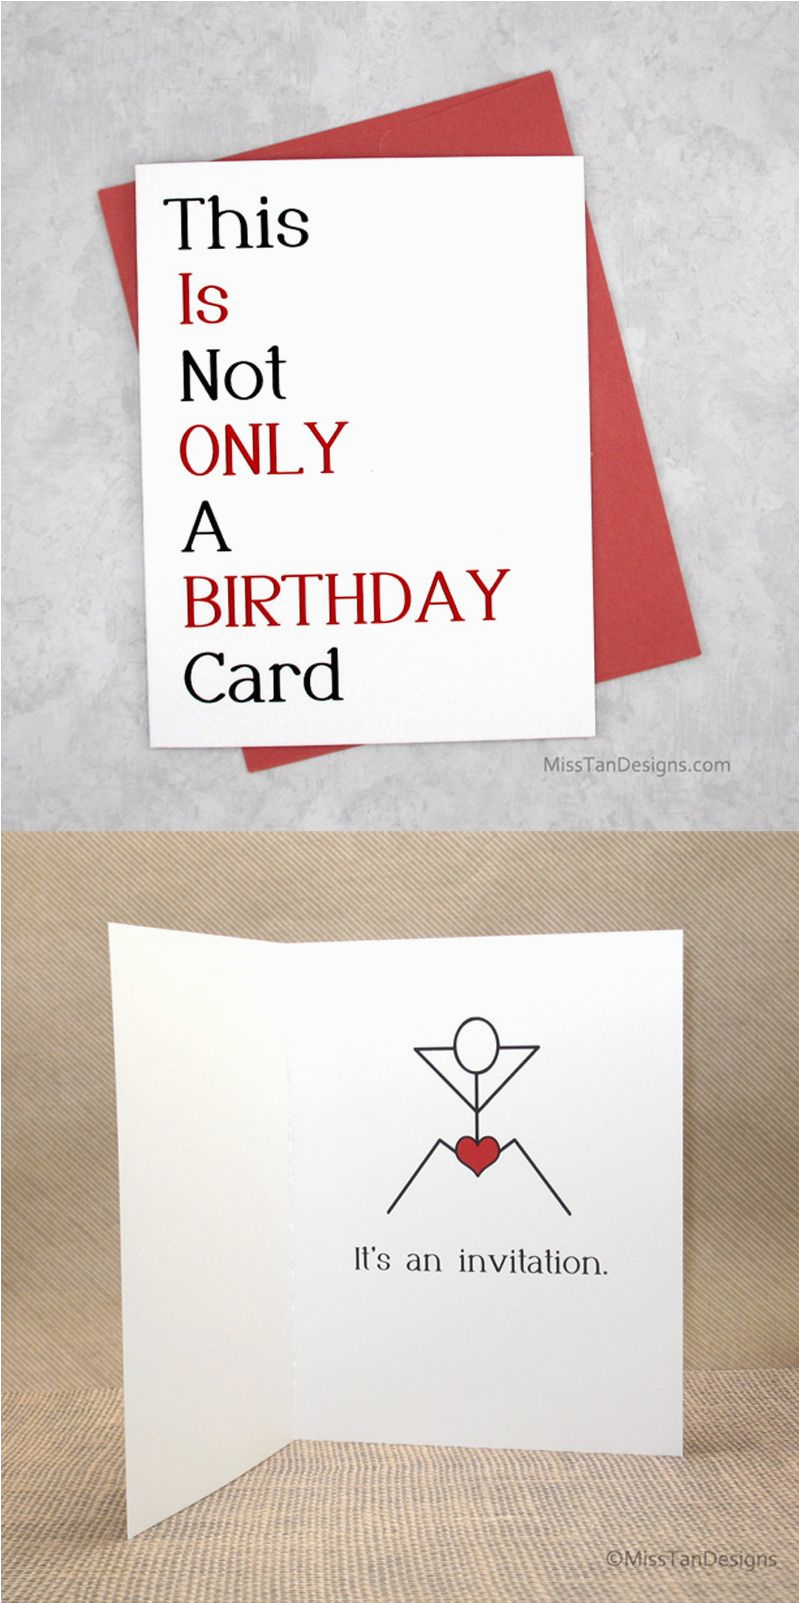 birthday-card-boyfriend-card-funny-birthday-card-by-boyfriend